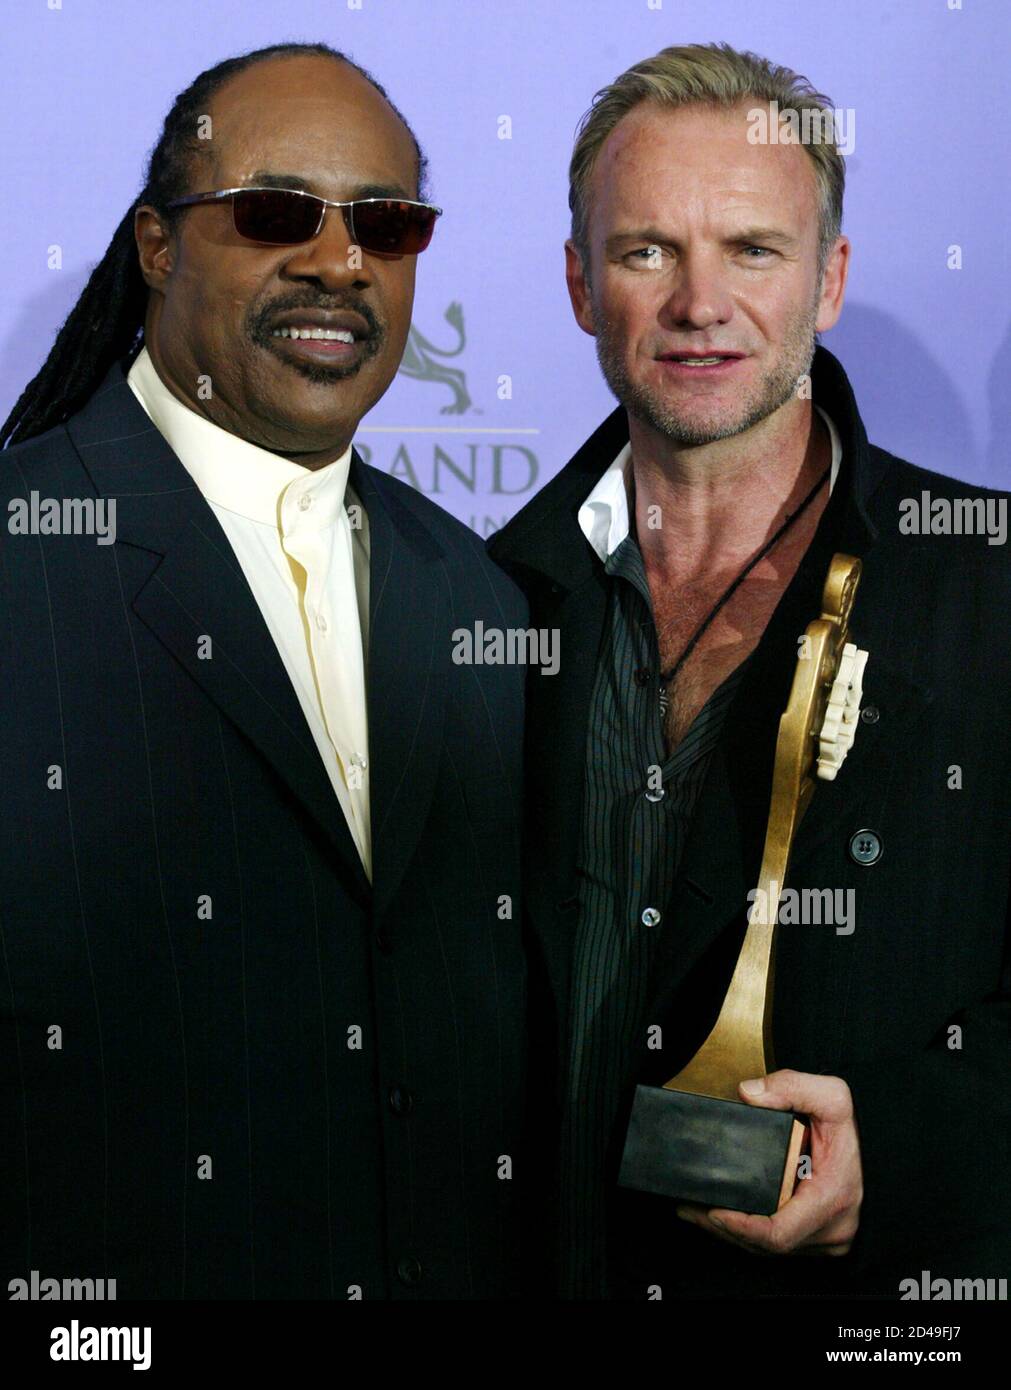 Stevie Wonder (L) und Sting stellen während der 2003 Billboard Music Awards in der MGM Grand Garden Arena in Las Vegas, Nevada, 10. Dezember 2003. Frage mich, Century Award zu stechen in der Show präsentiert. Stockfoto